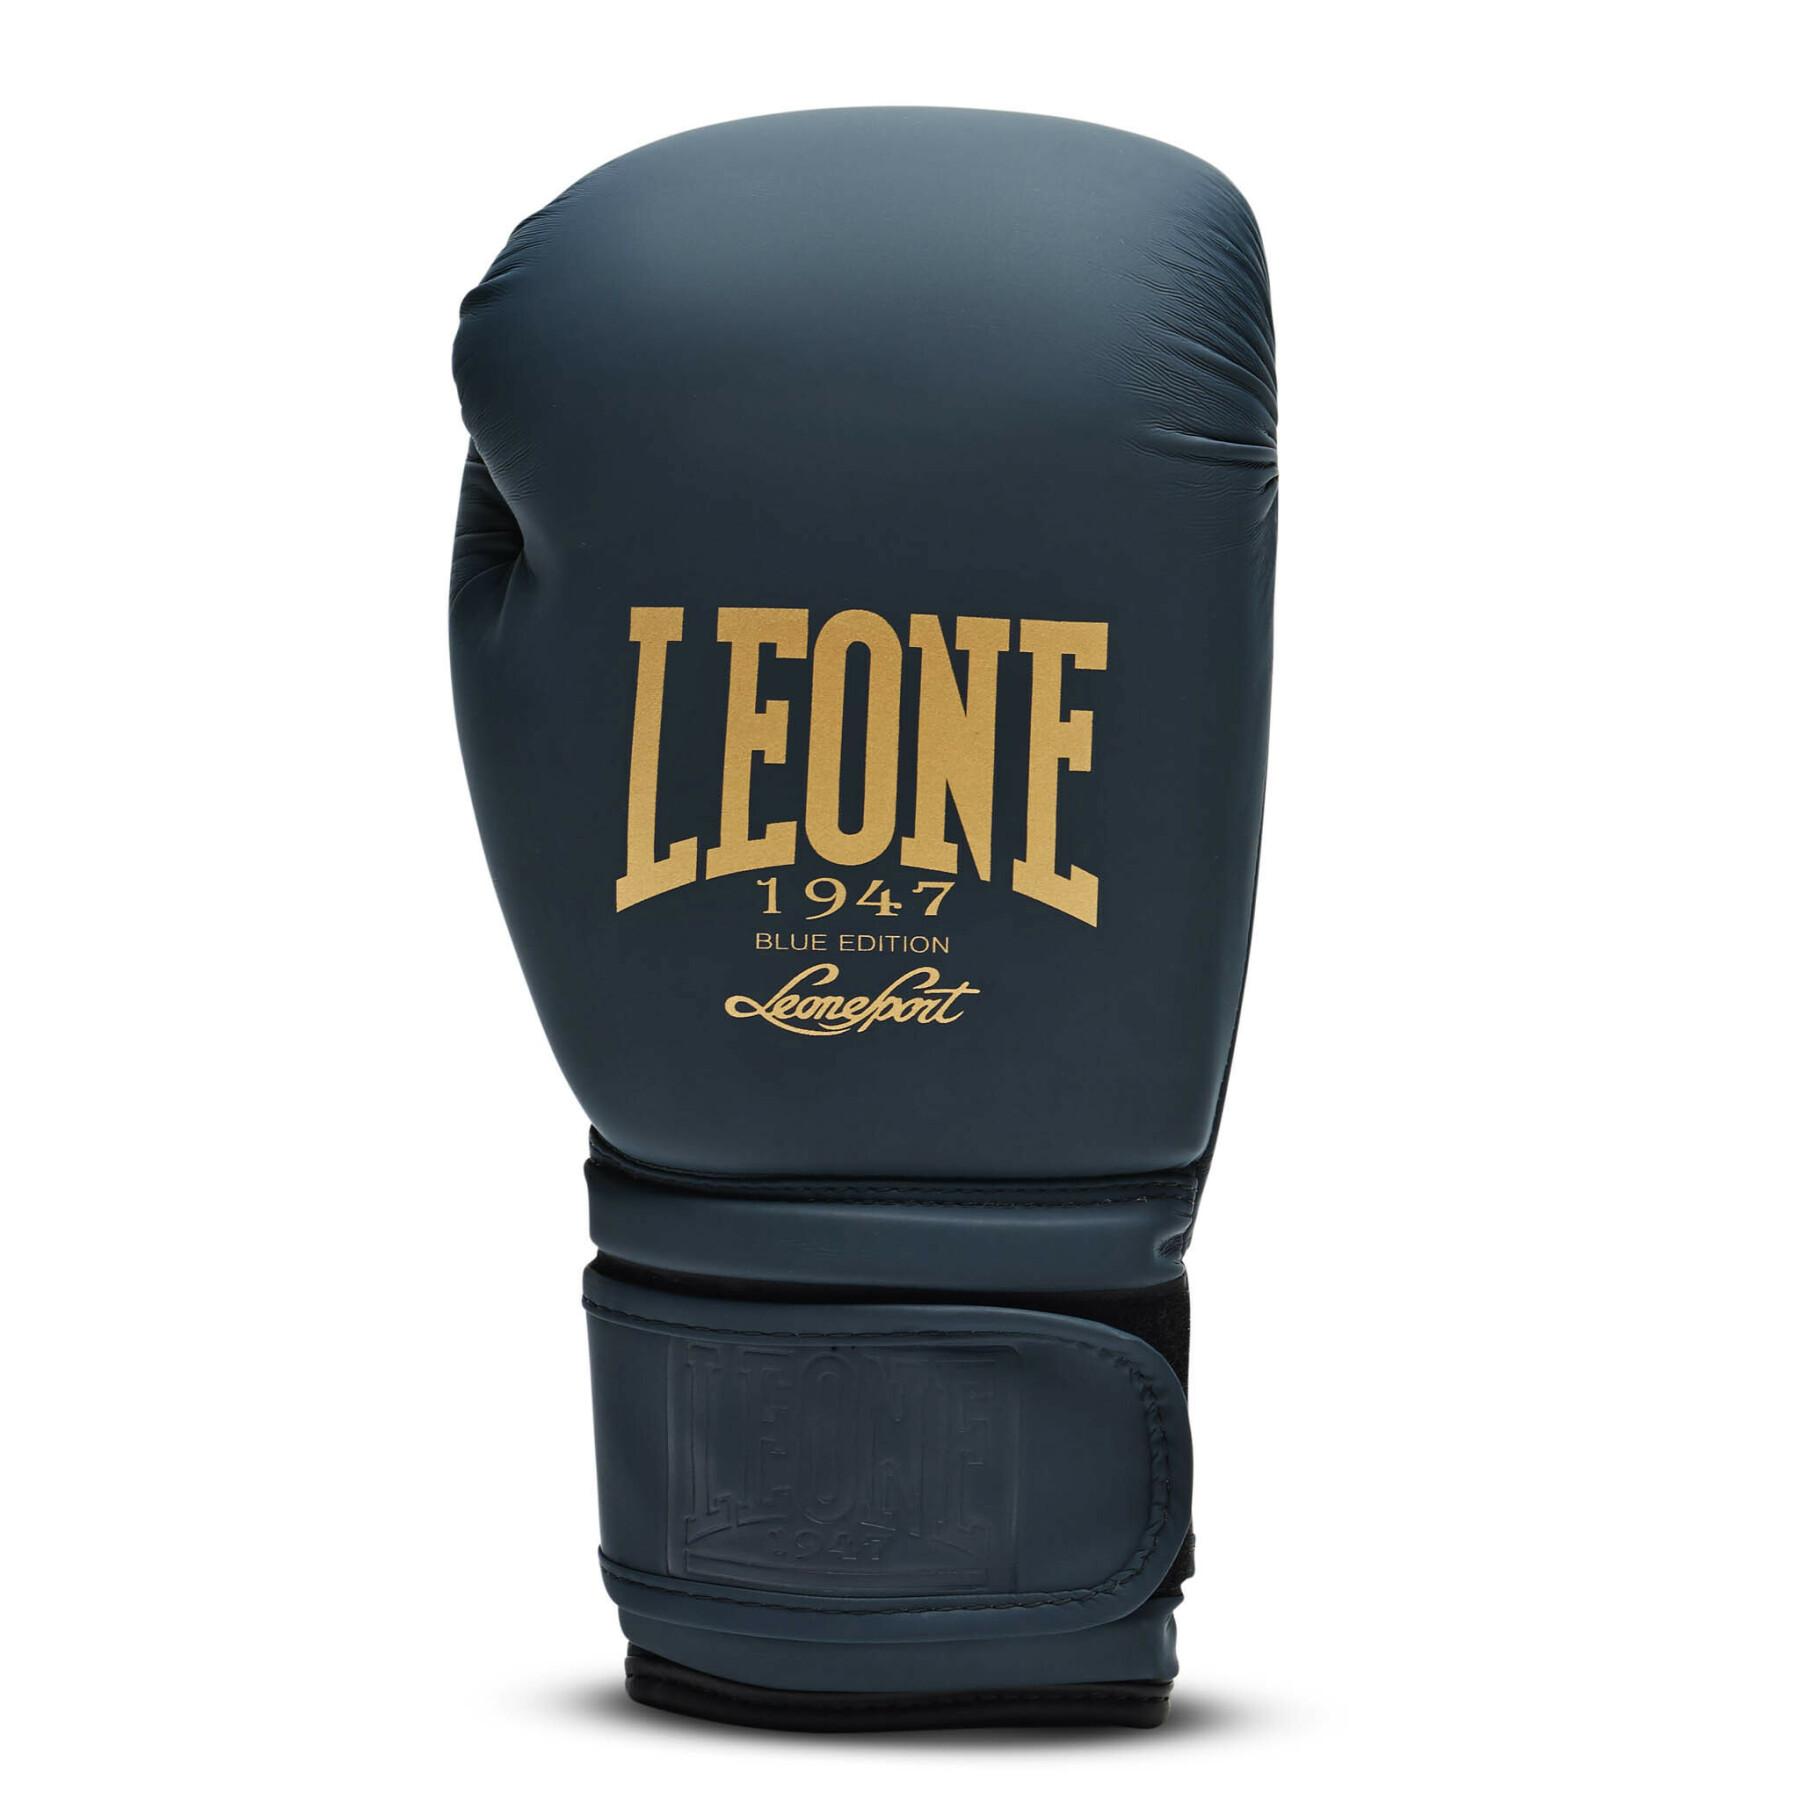 Boxing gloves Leone 10 oz